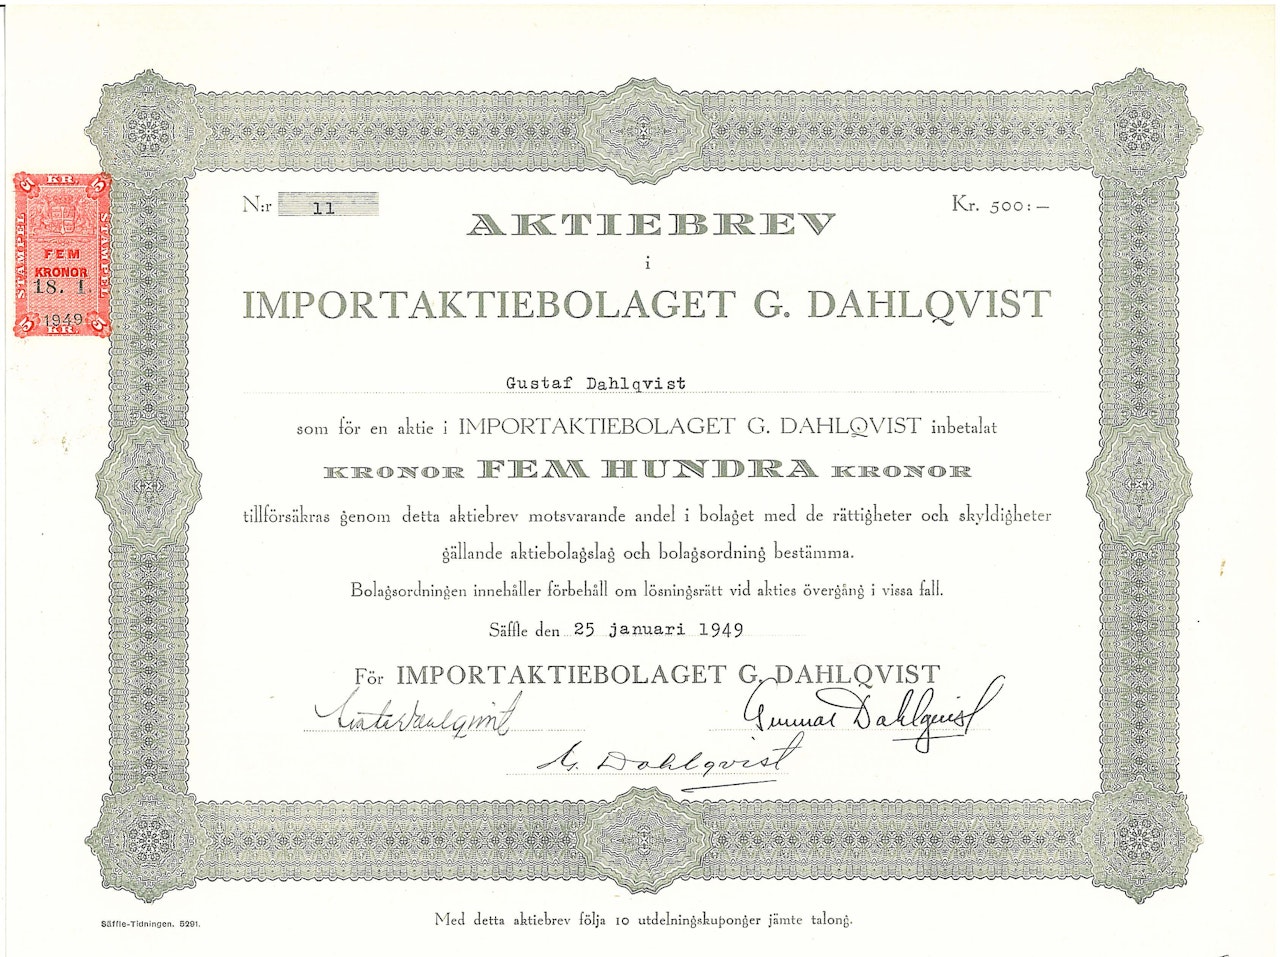 Import AB G. Dahlqvist